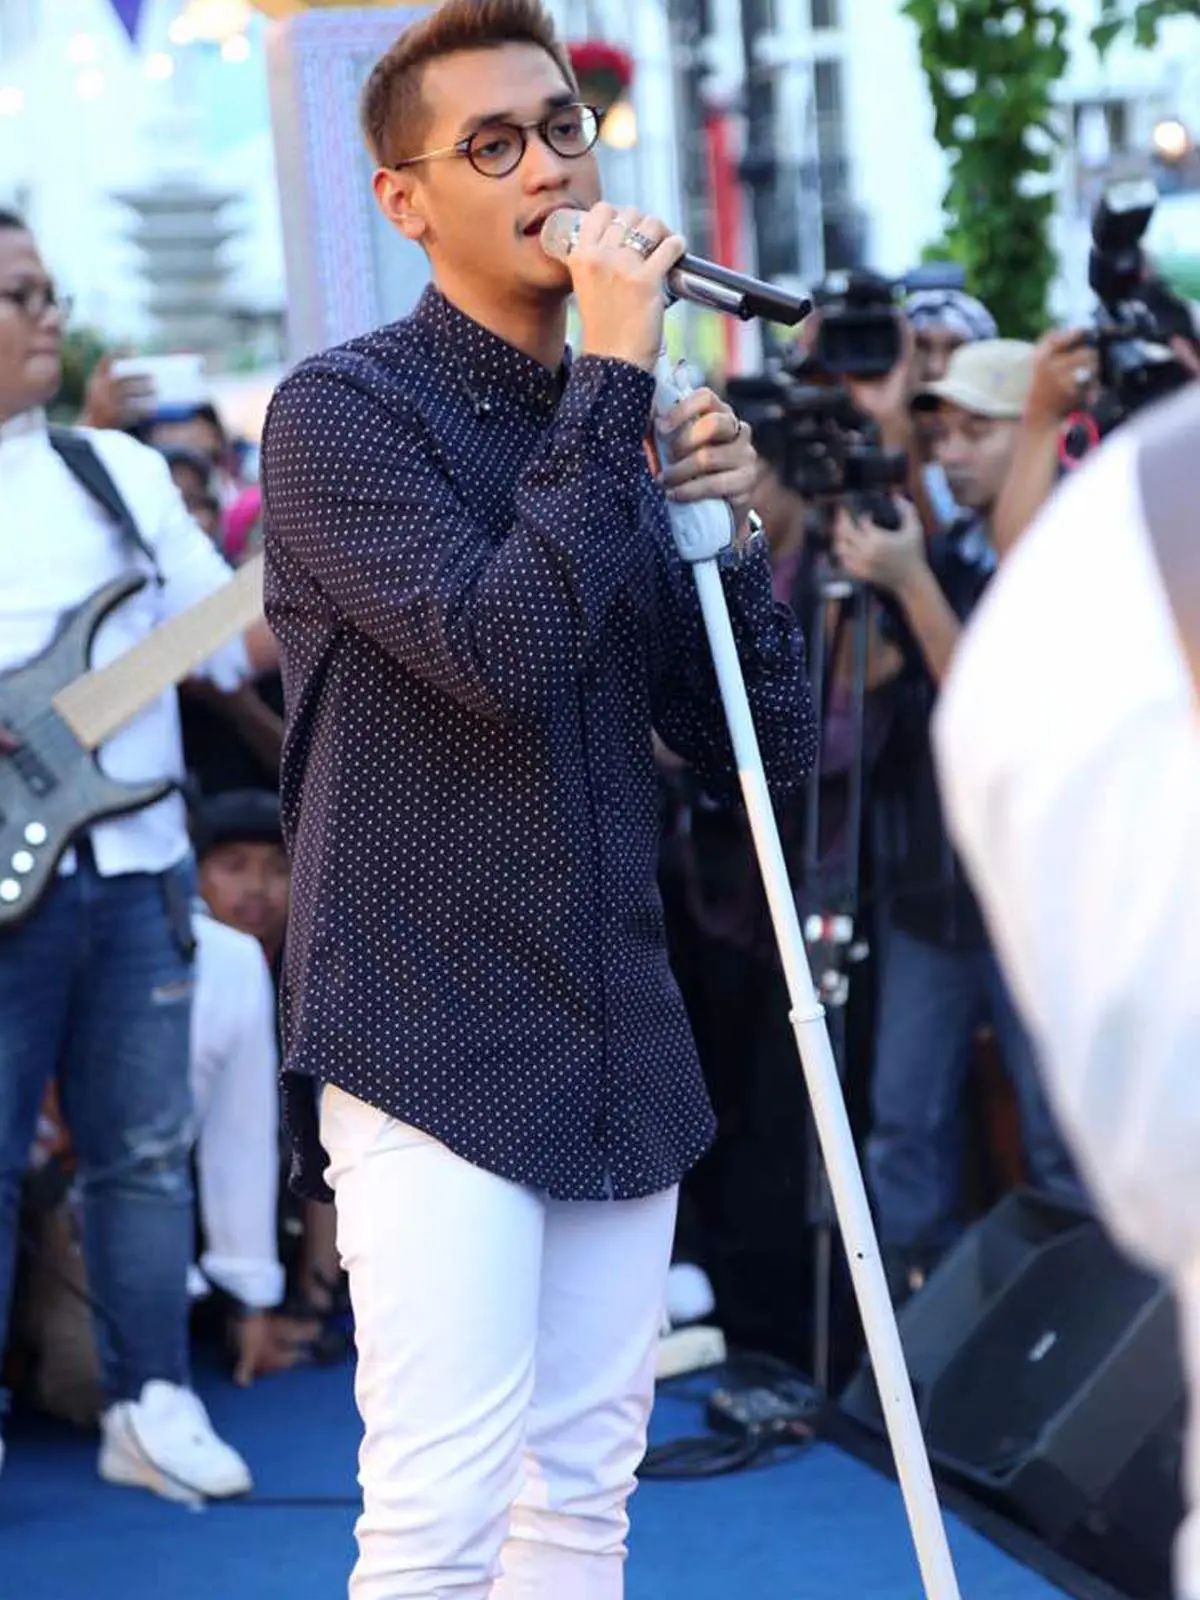 Afgan memberi penampilan di acara Ramadan bertajuk Bubos di Bandung. (Istimewa)